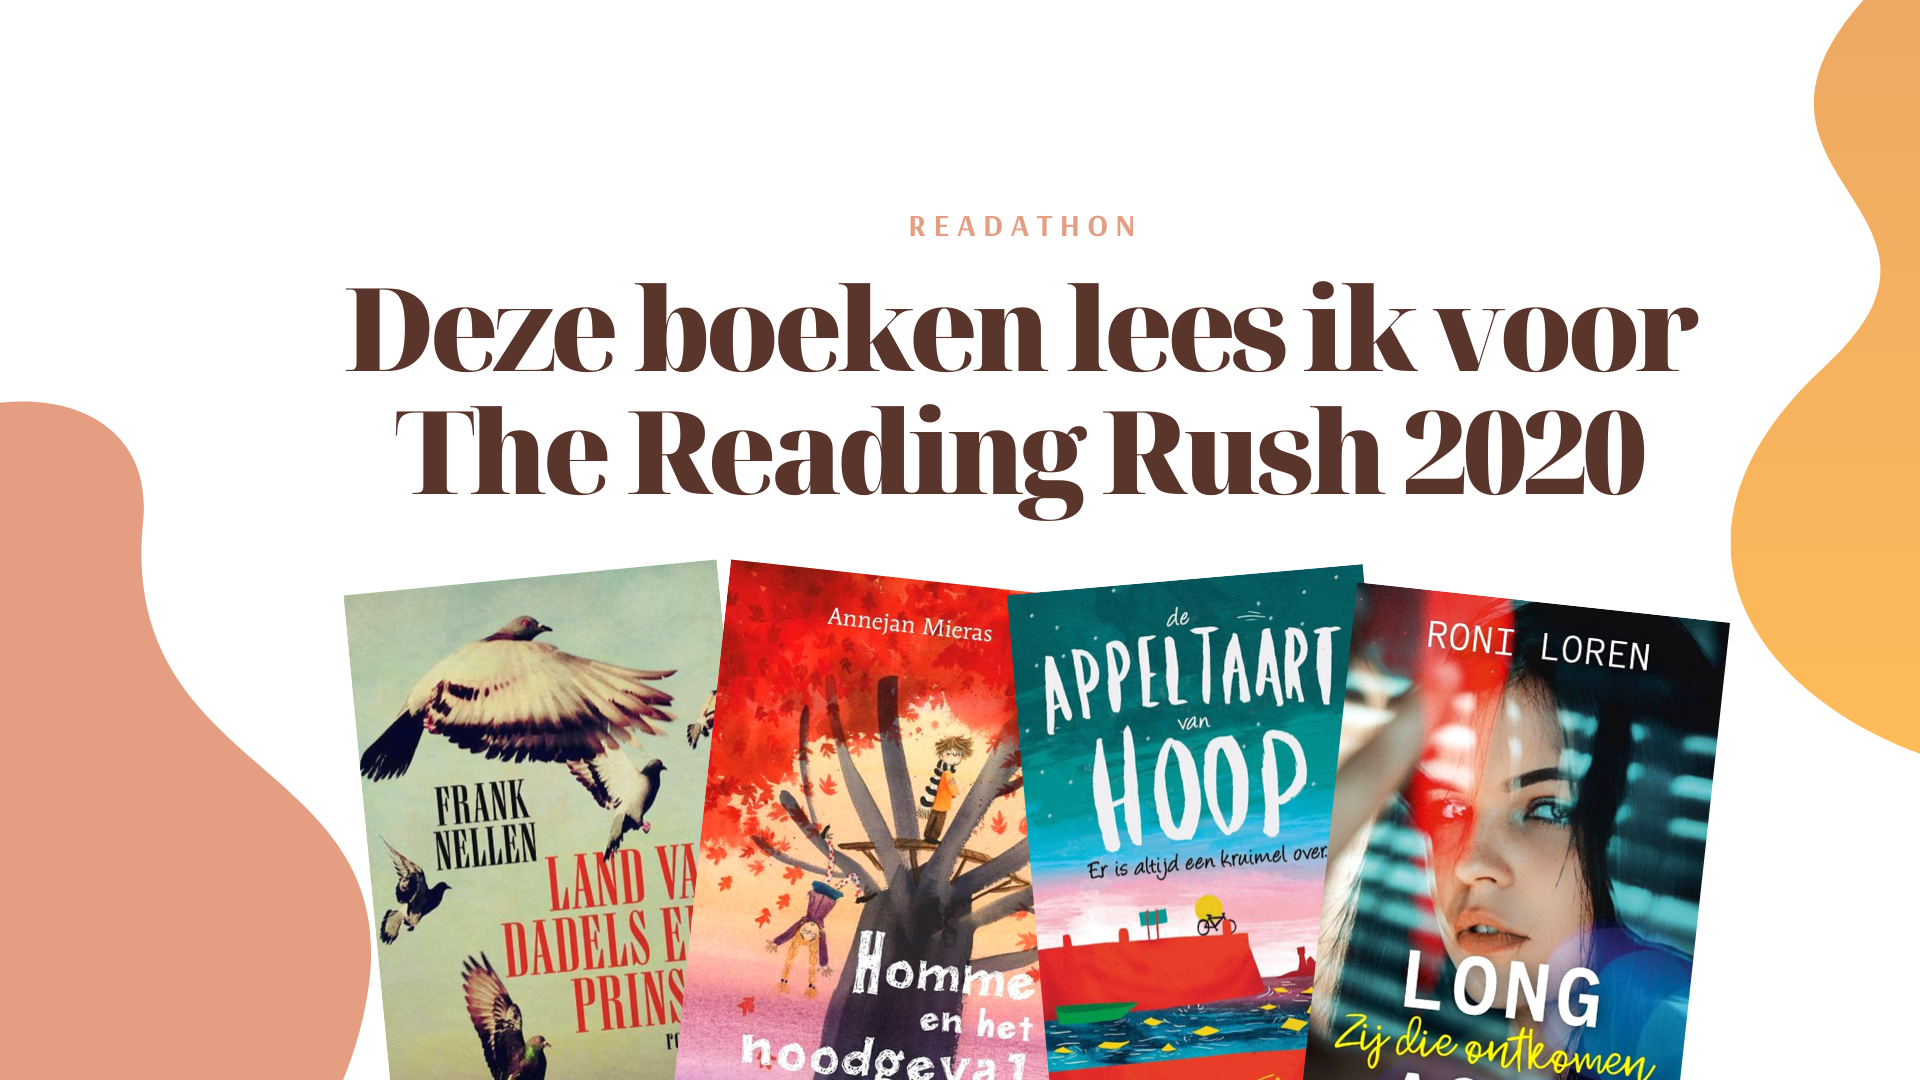 The Reading Rush 2020: Deze boeken ga ik lezen